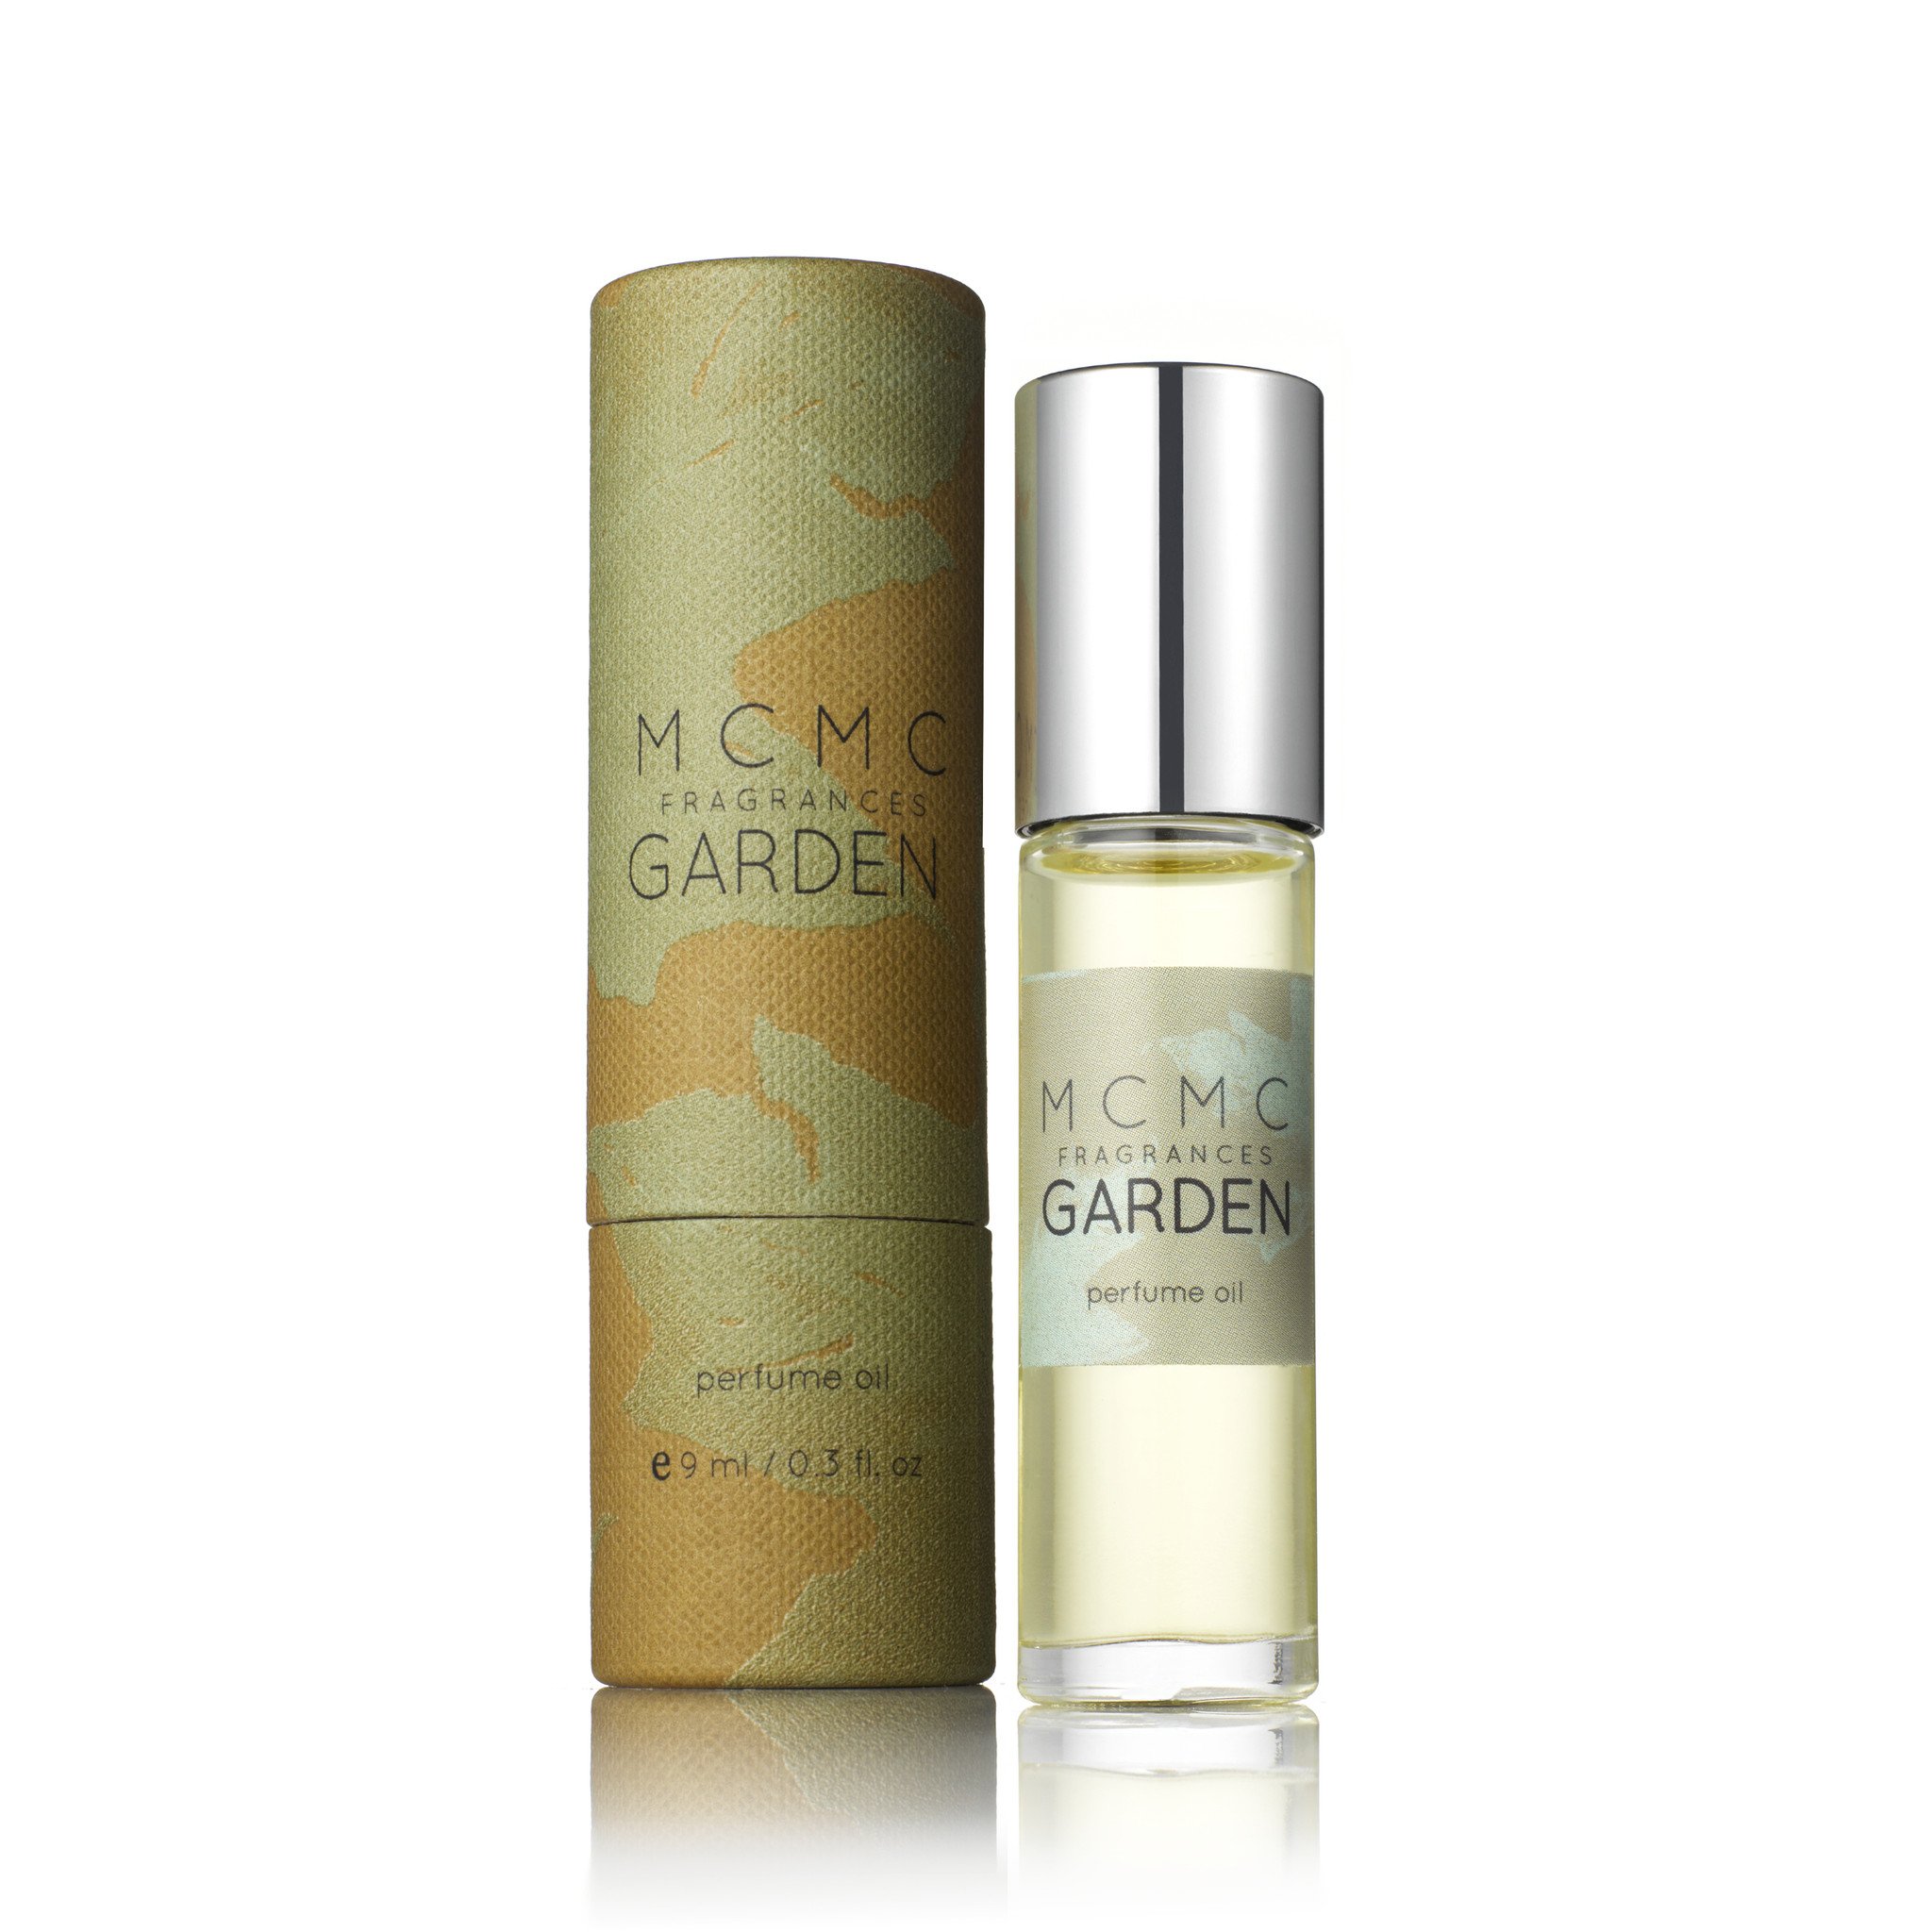 GARDEN 10ml perfume oil | MCMC Fragrances